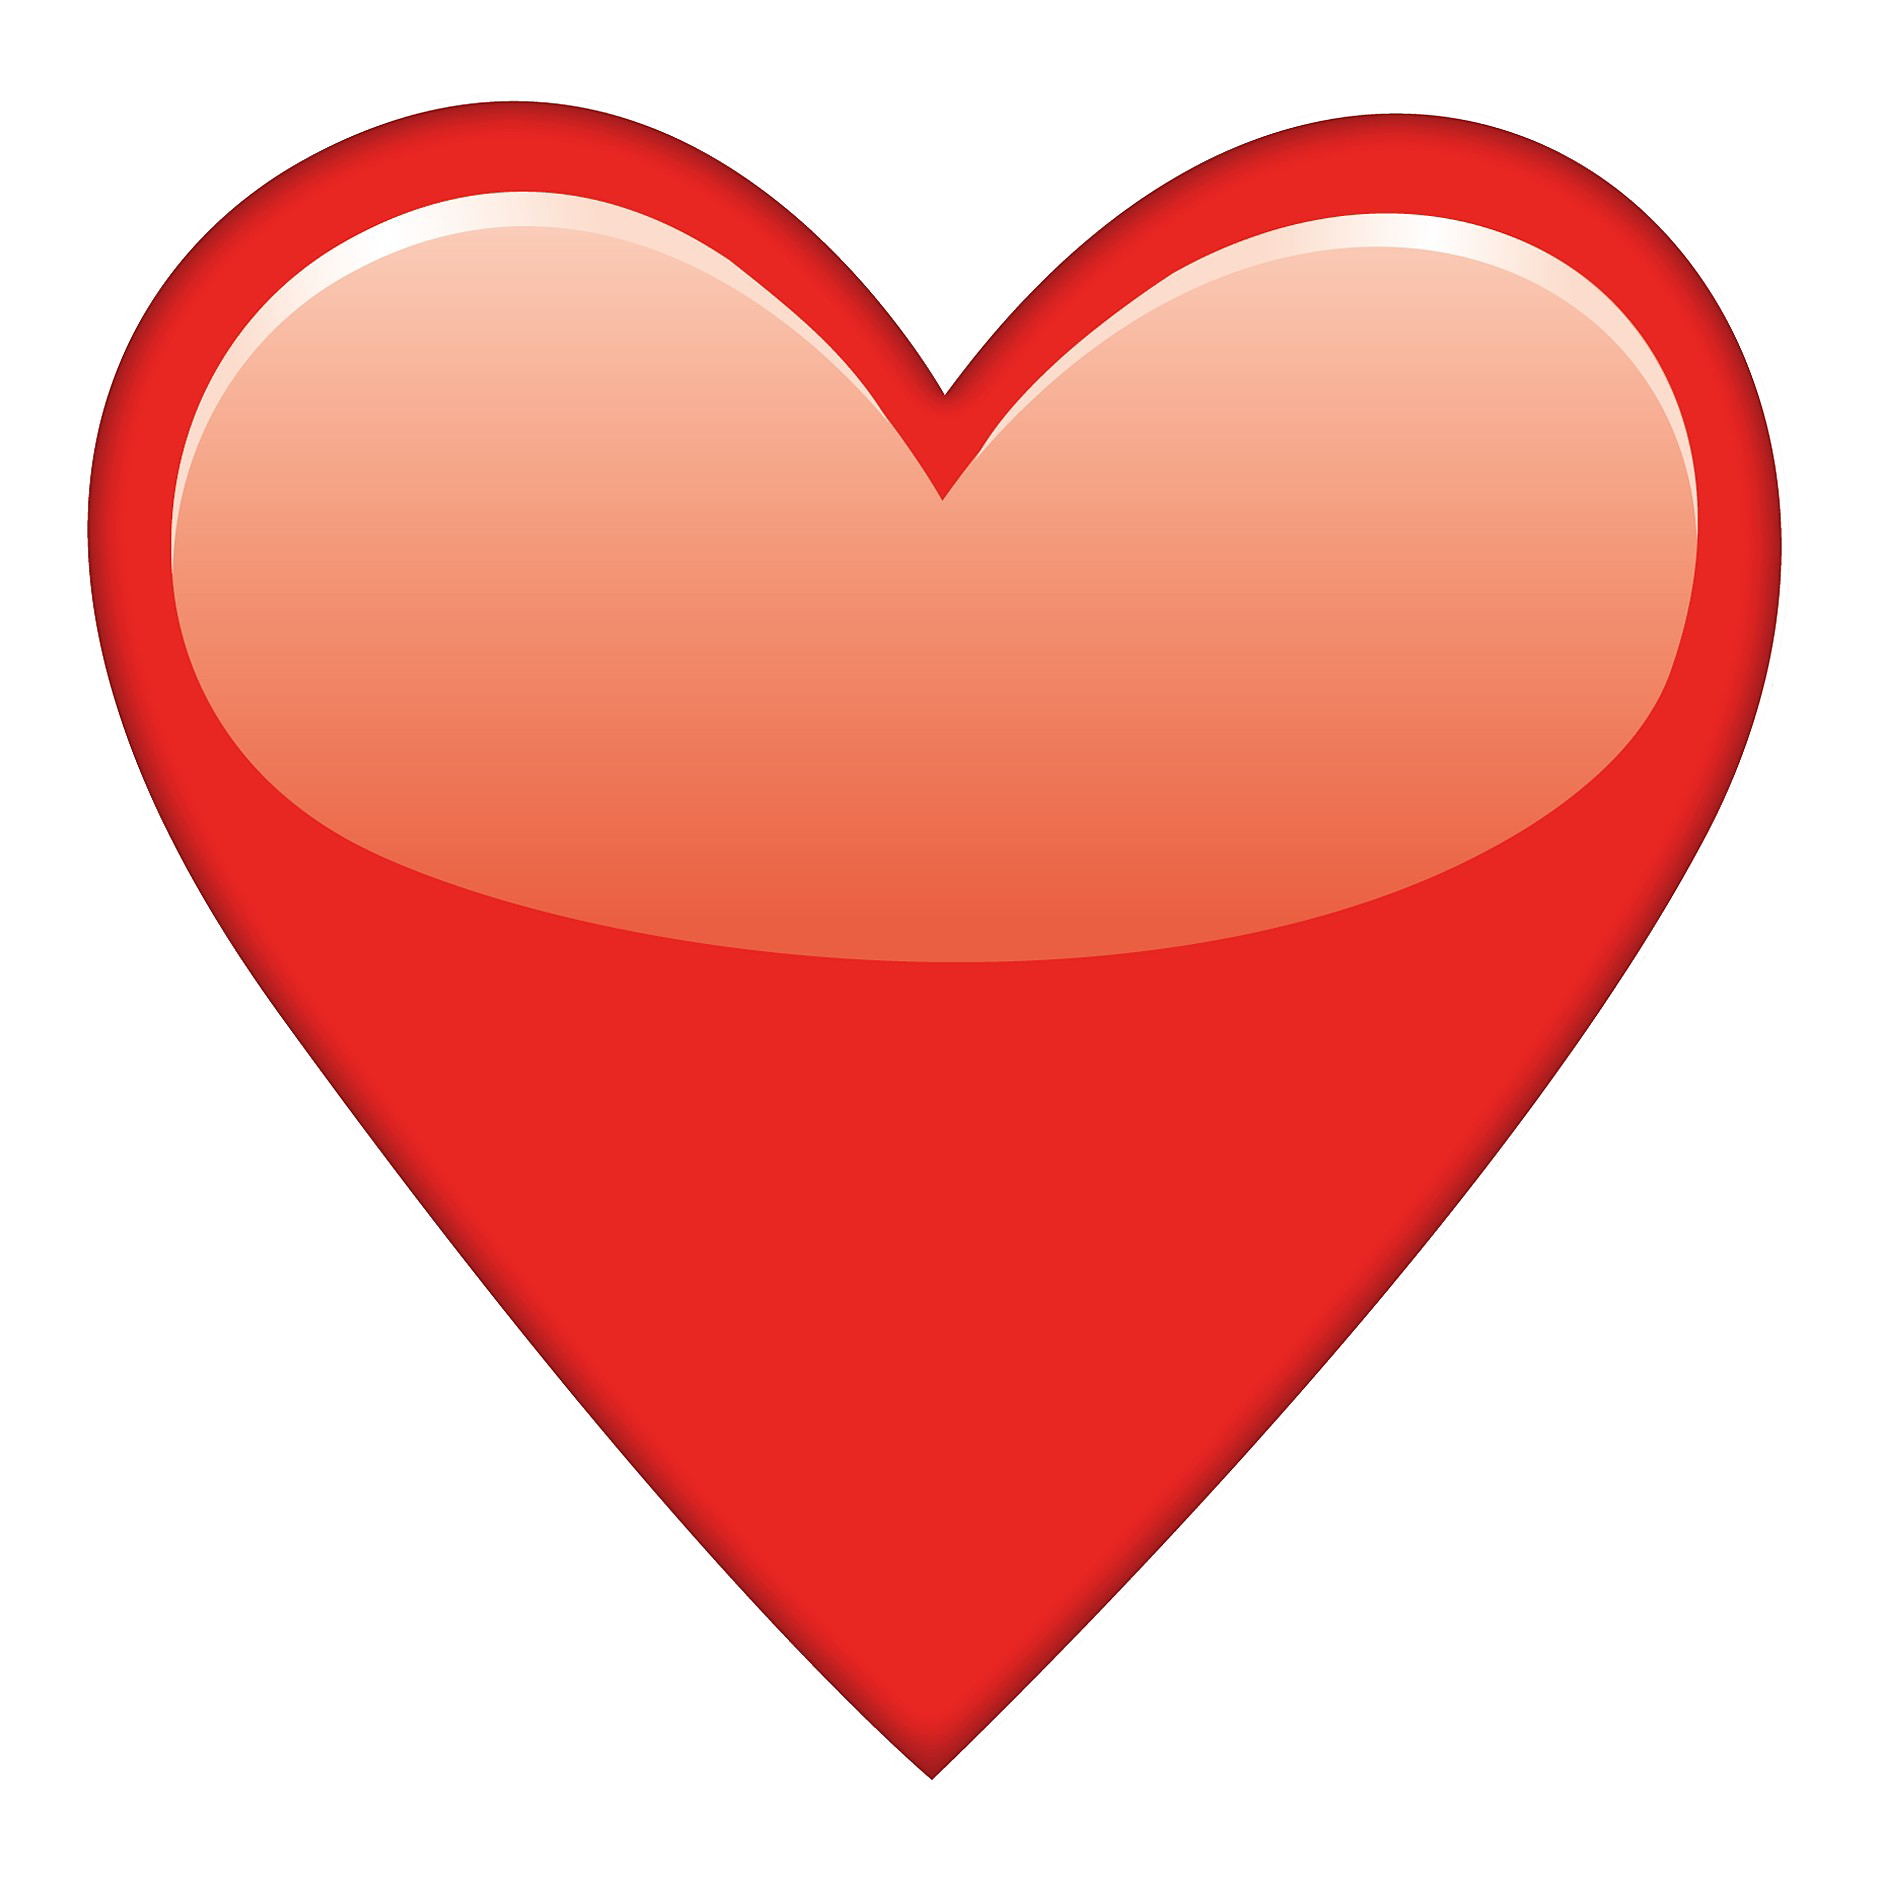 Heart Emoji PNG Free Image